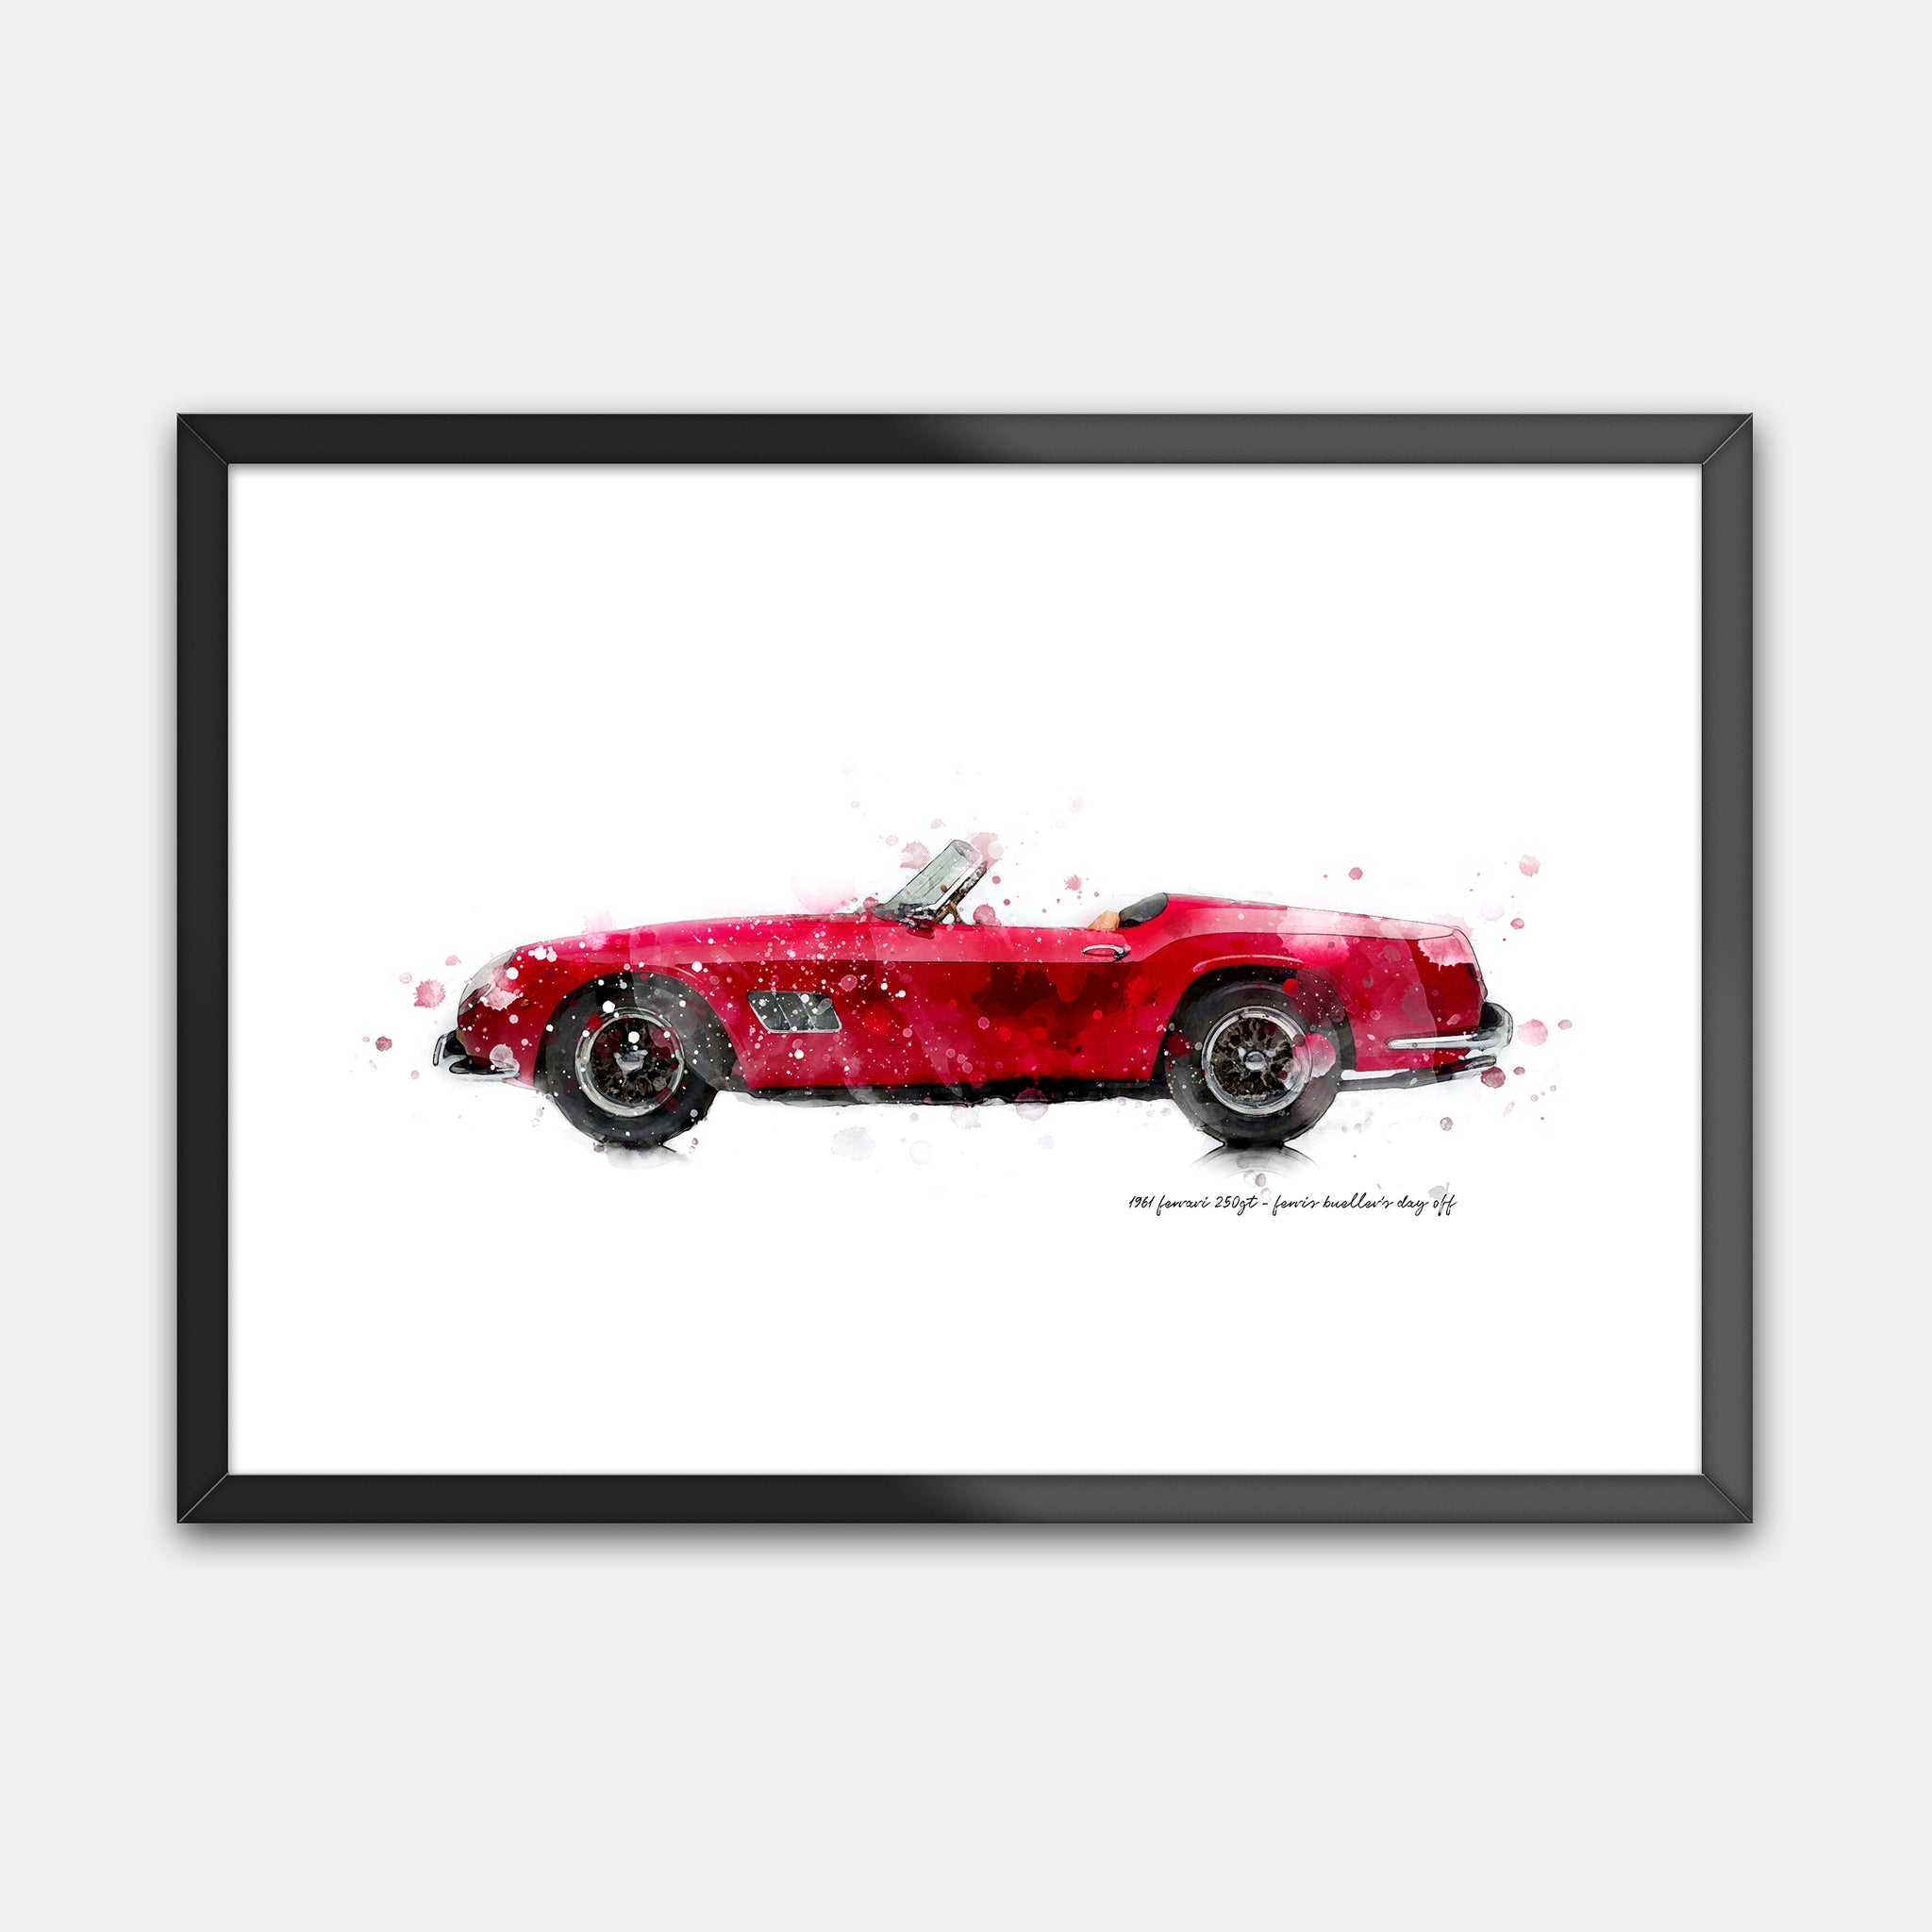 1961 Ferrari 250GT - "Ferris Bueller’s Day Off"